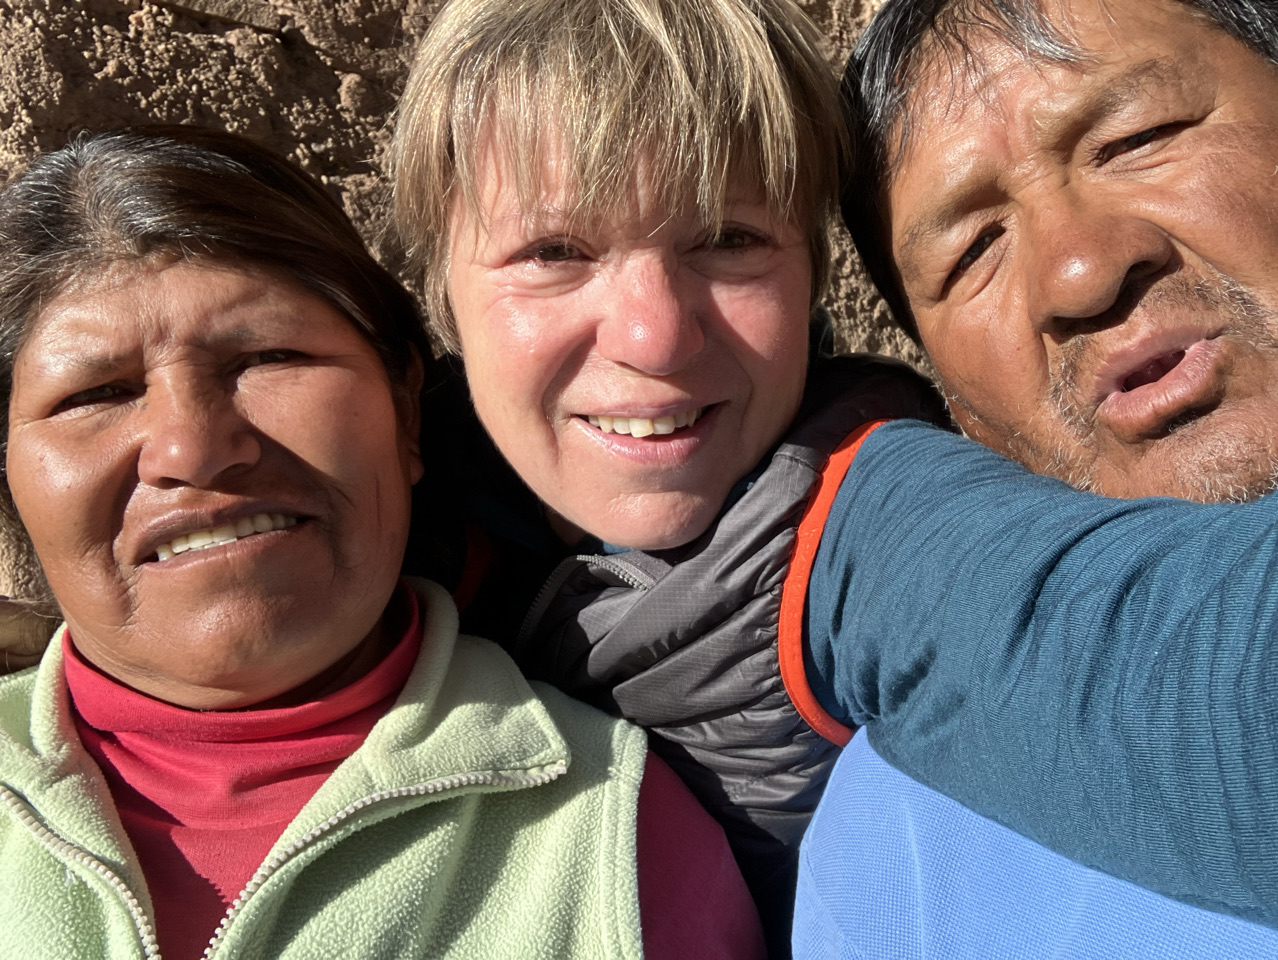 Carnets et photos de voyage Bolivie - Immersion communauté Quechua à Santiago K